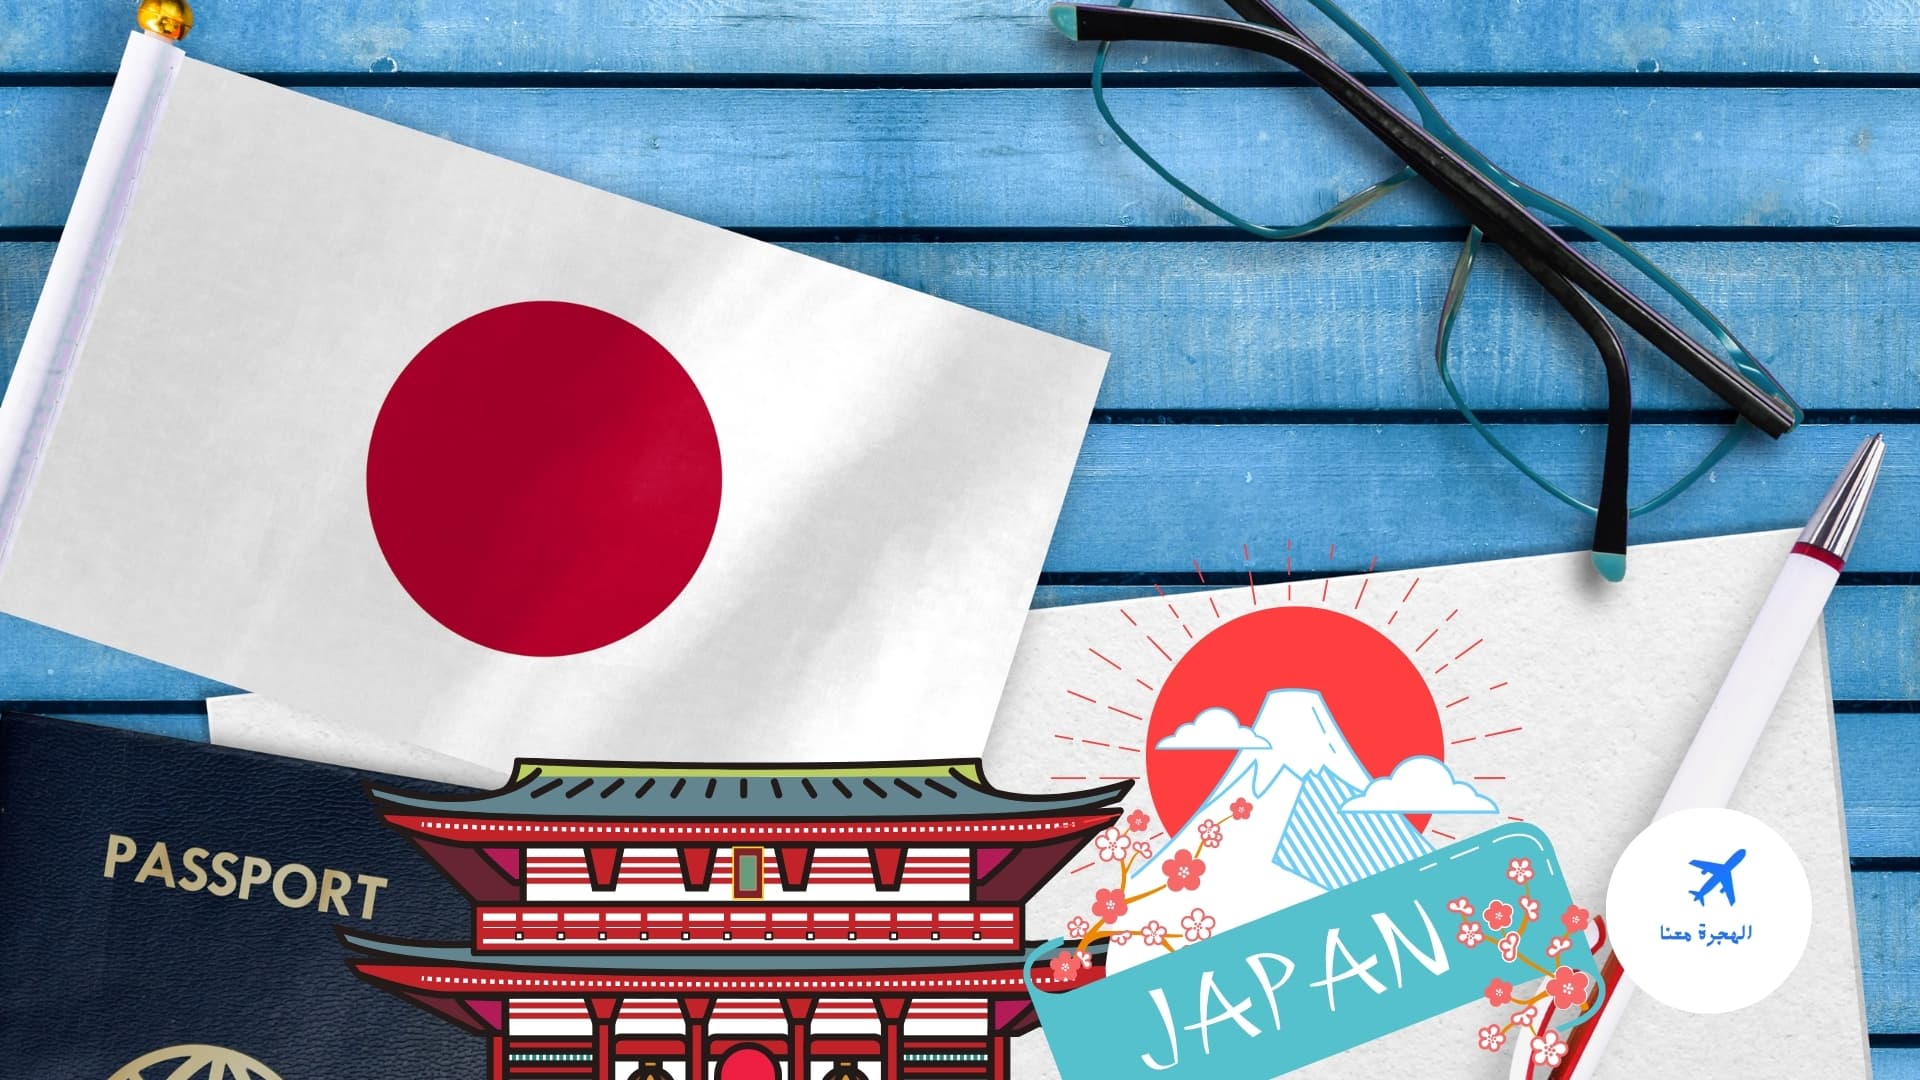 الدول التي تدخل اليابان بدون فيزا